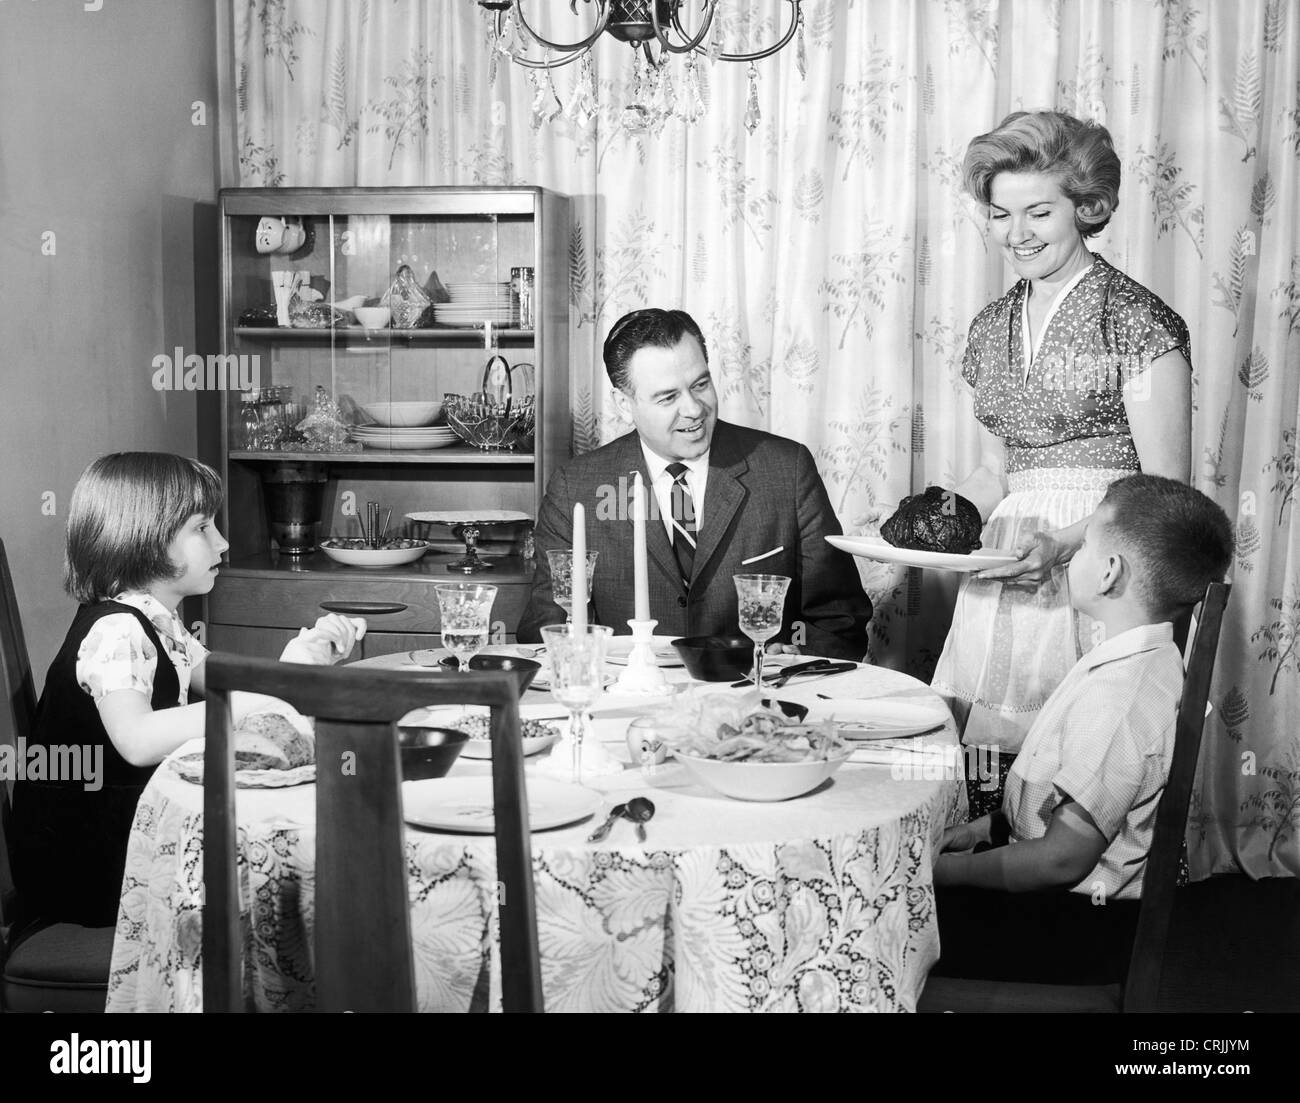 Family having dinner at home Stock Photo